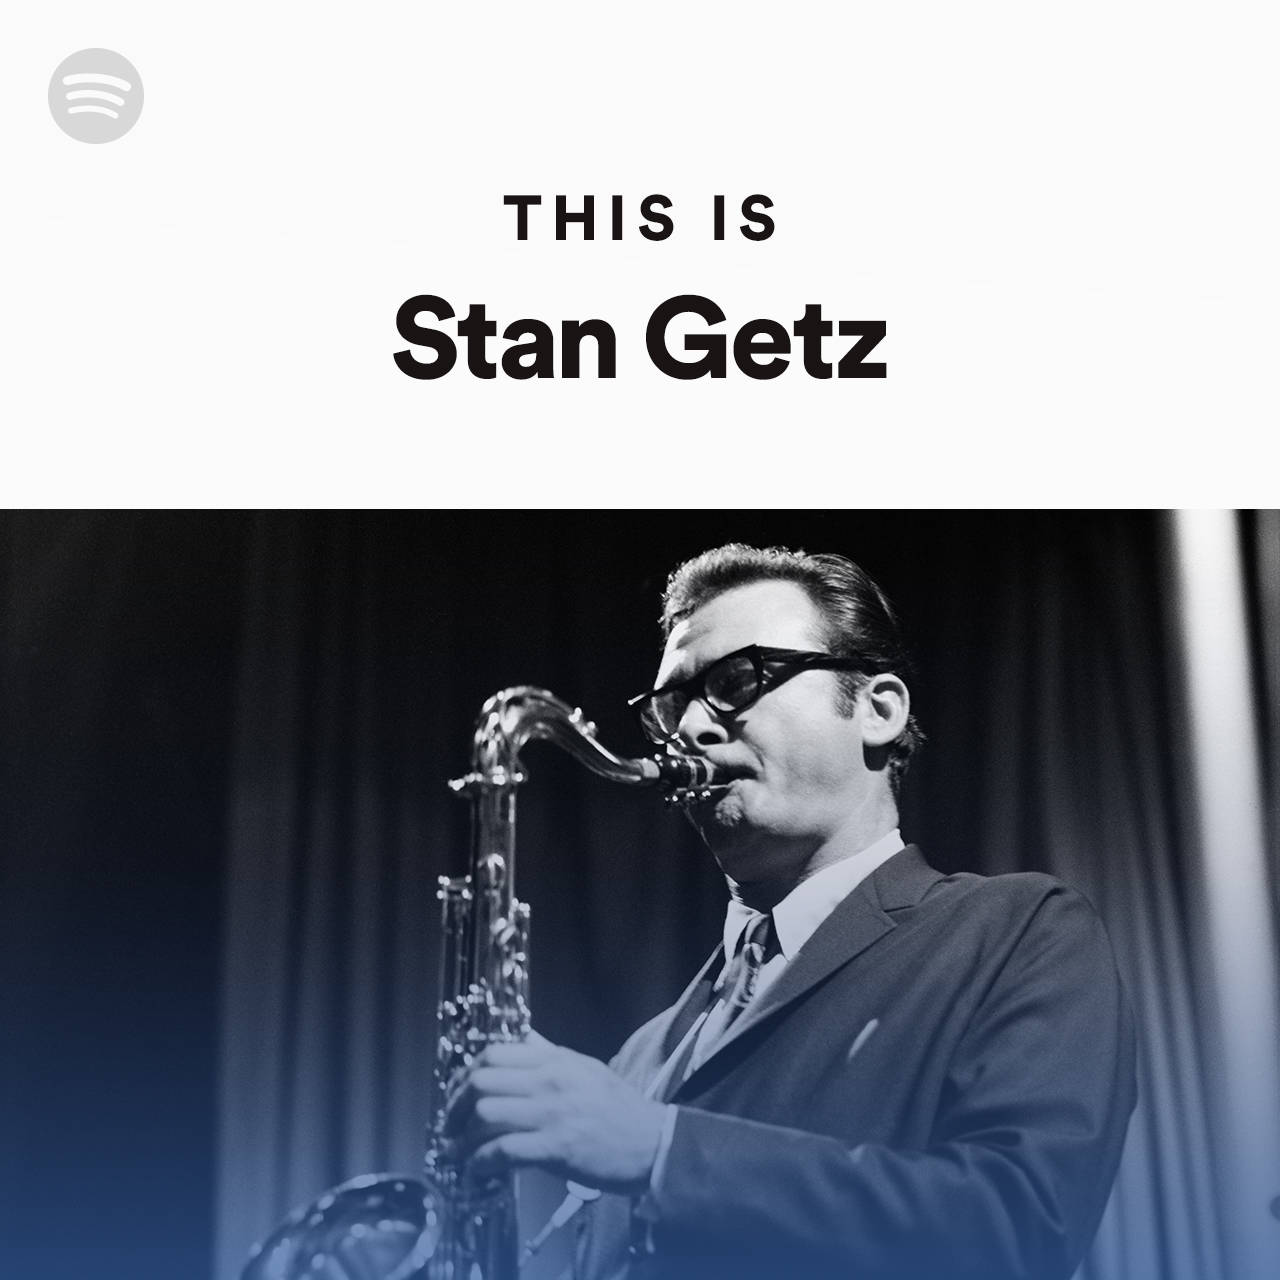 Diesist Das Albumcover Von Stan Getz Auf Spotify. Wallpaper